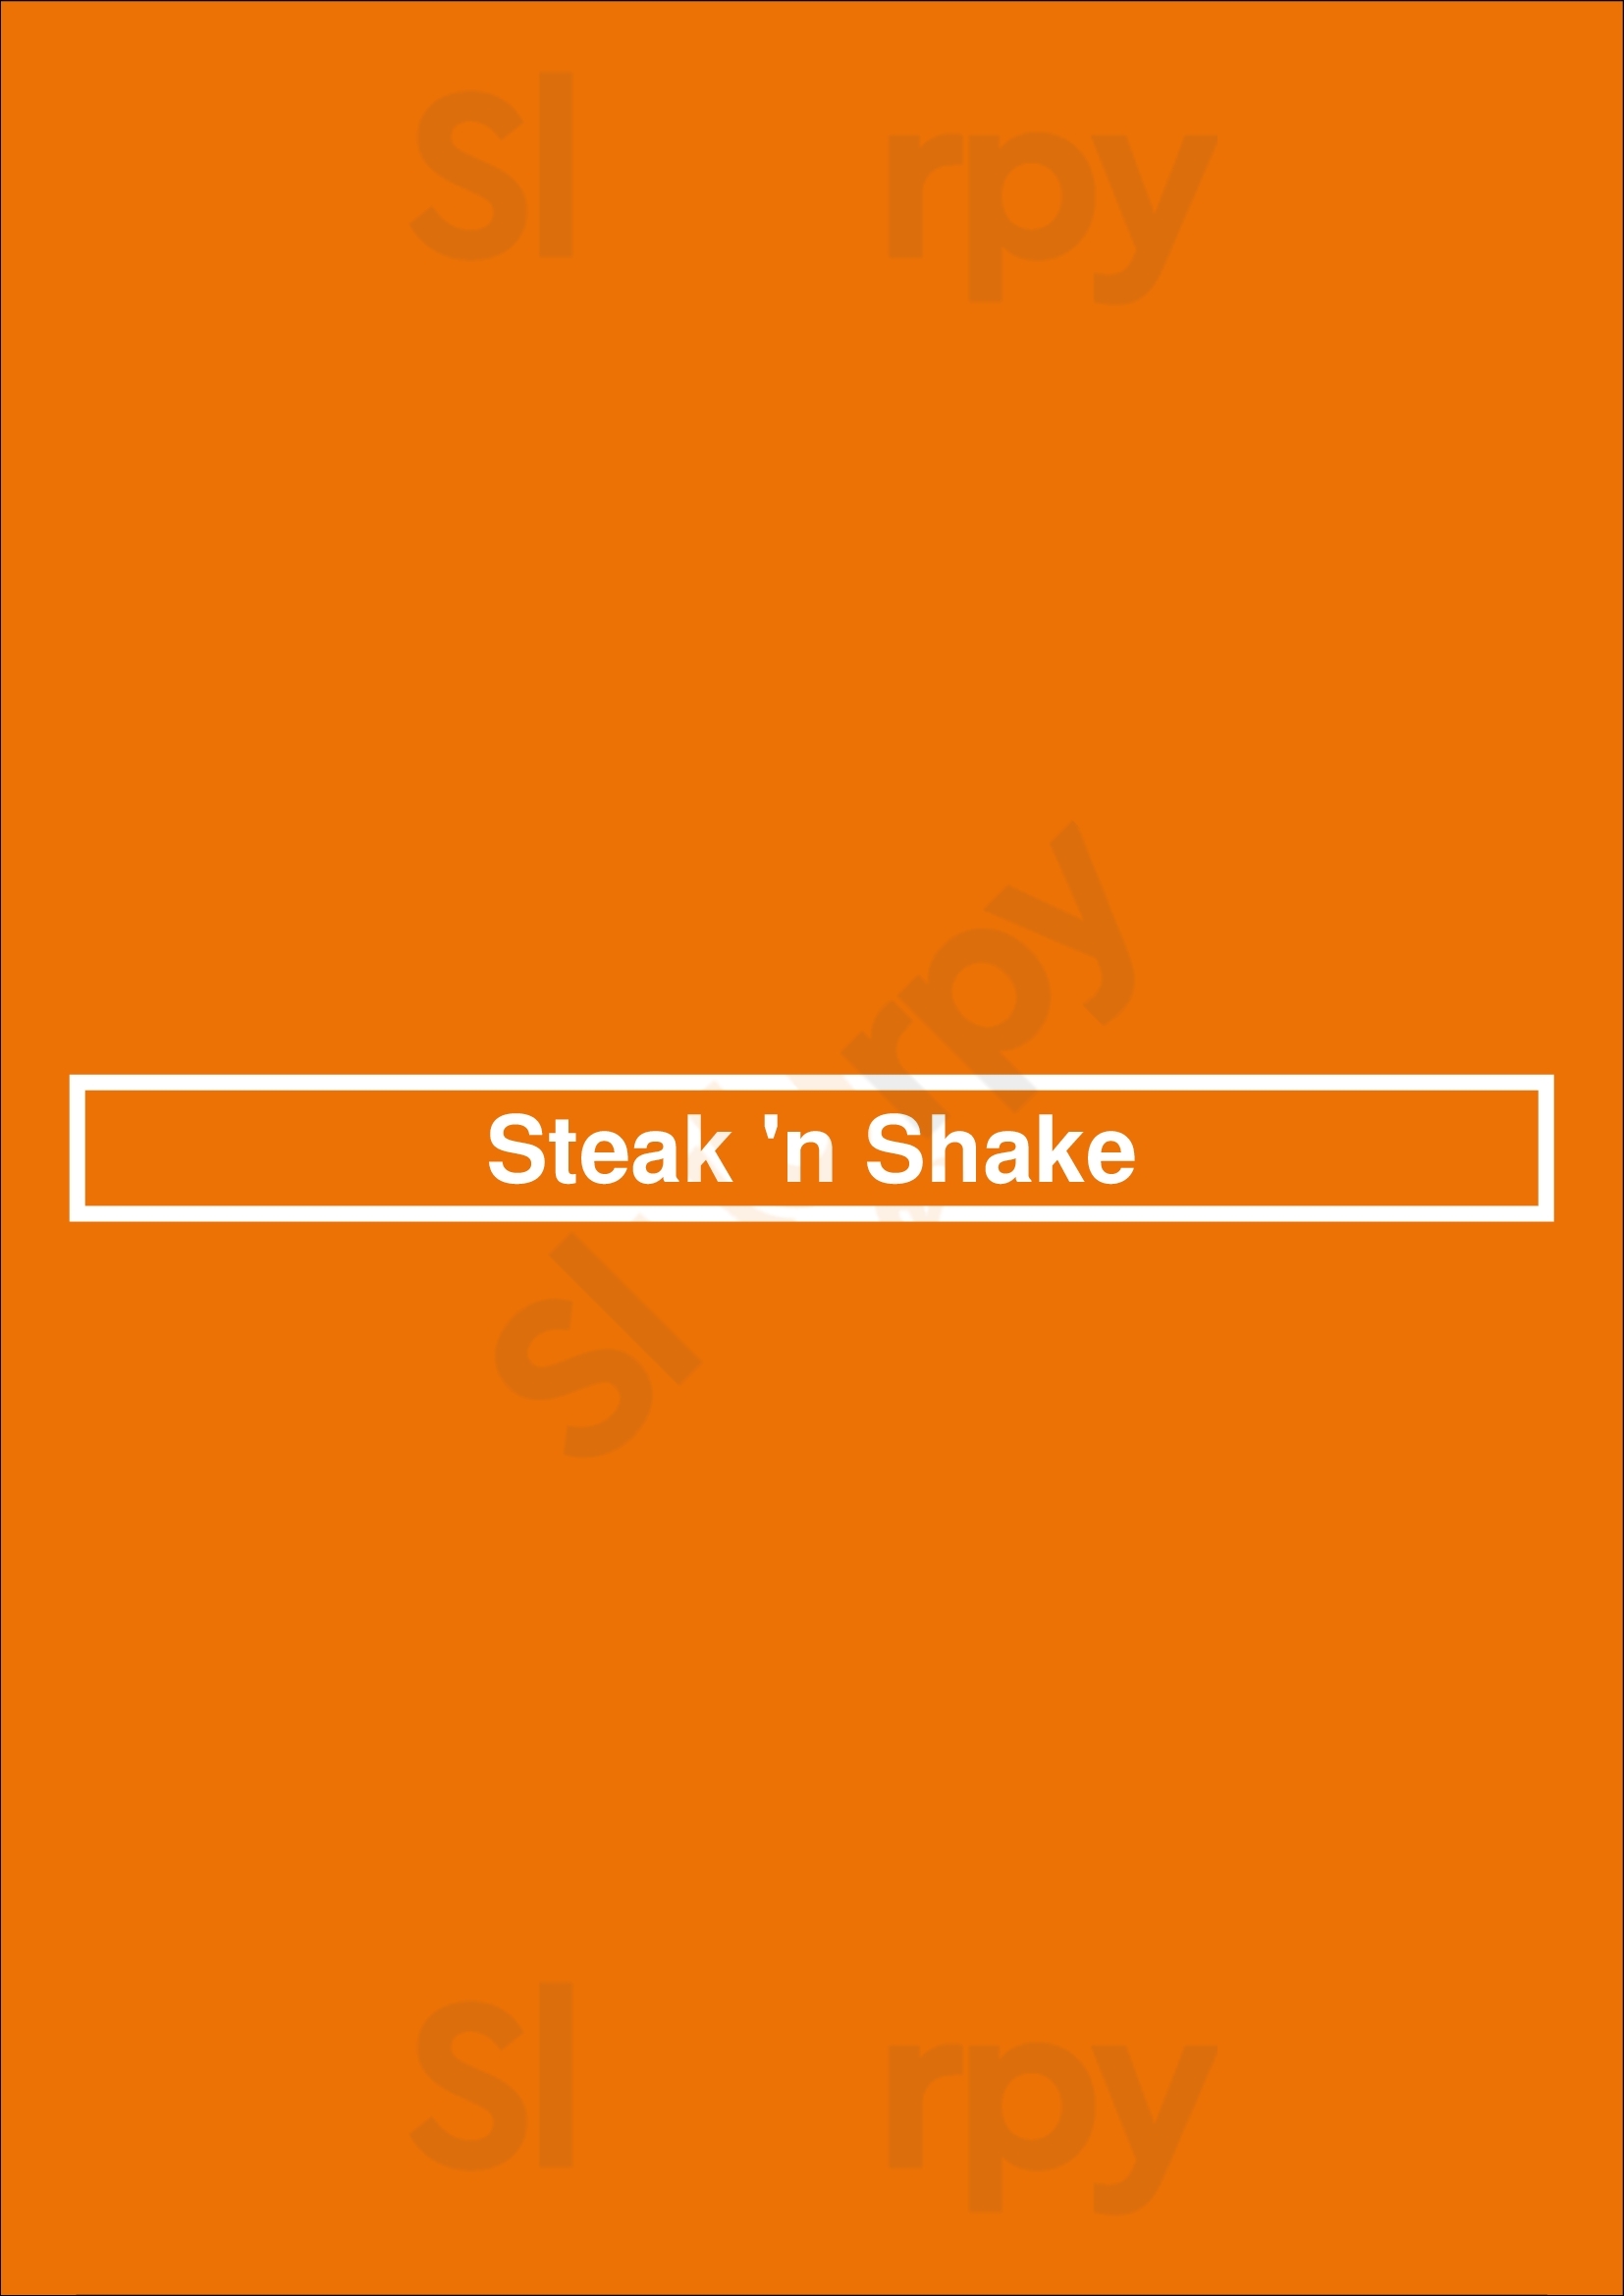 Steak 'n Shake Cleveland Menu - 1